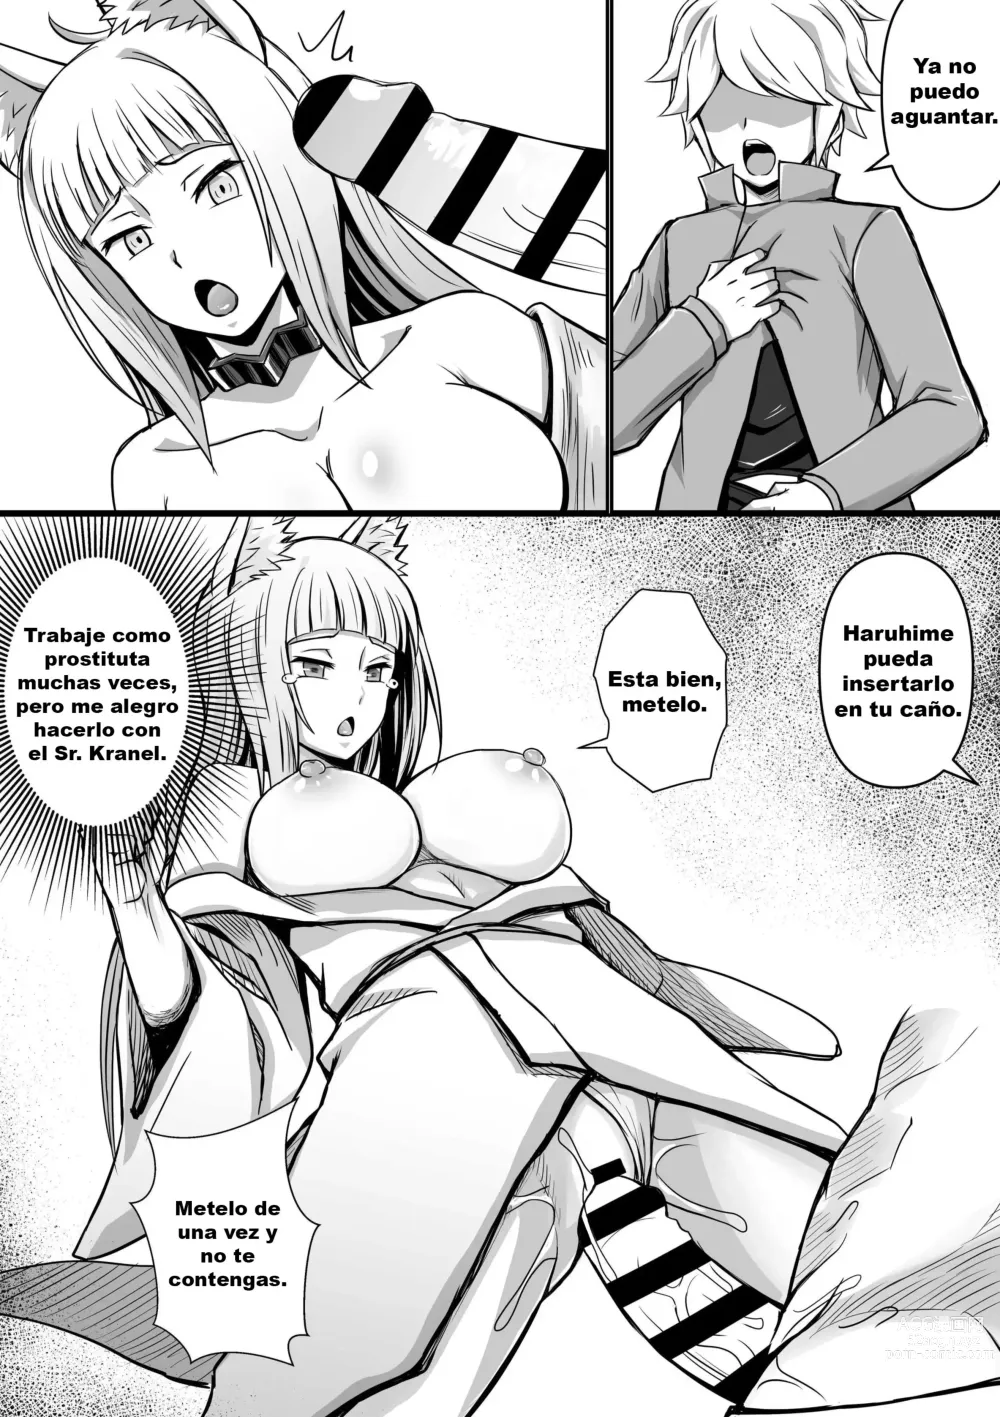 Page 4 of doujinshi Haruhime, Bell-kun ni Yotogi o Suru